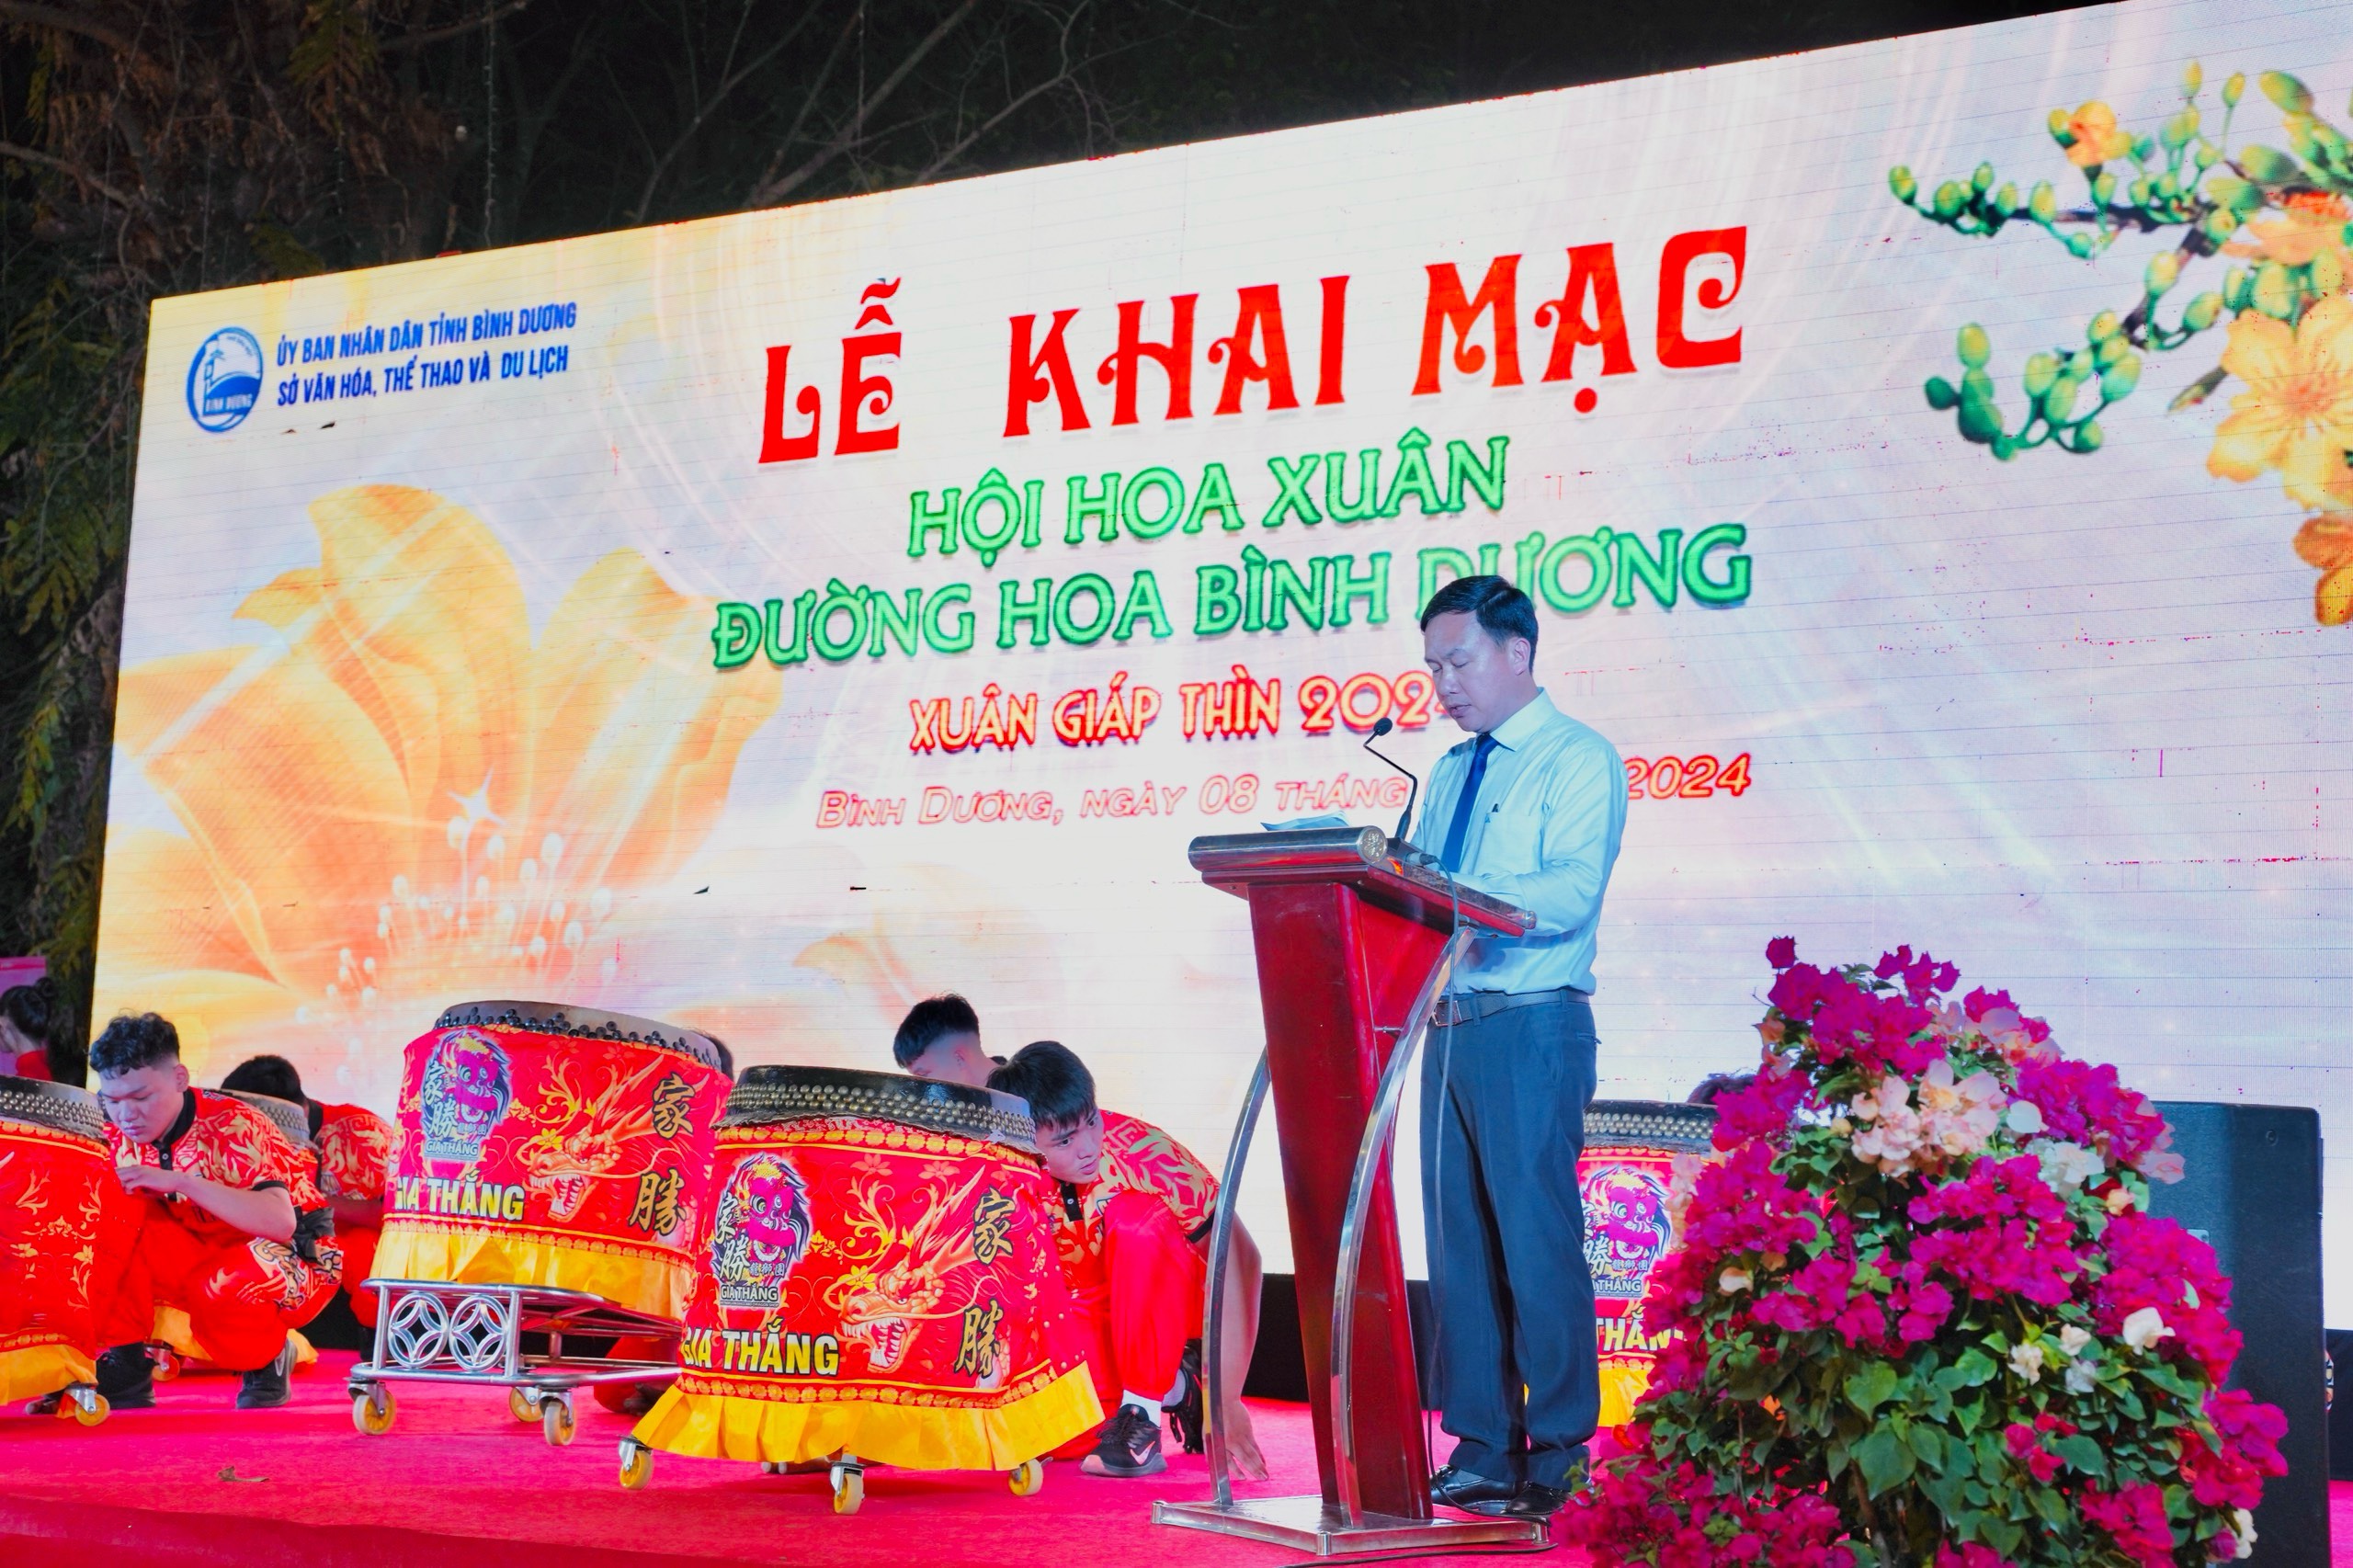 Ông Bùi Hữu Toàn - Giám đốc Sở Văn hoá Thể thao và Du lịch tỉnh Bình Dương phát biểu khai mạc Hội Hoa xuân Đường hoa Bình Dương năm 2024.